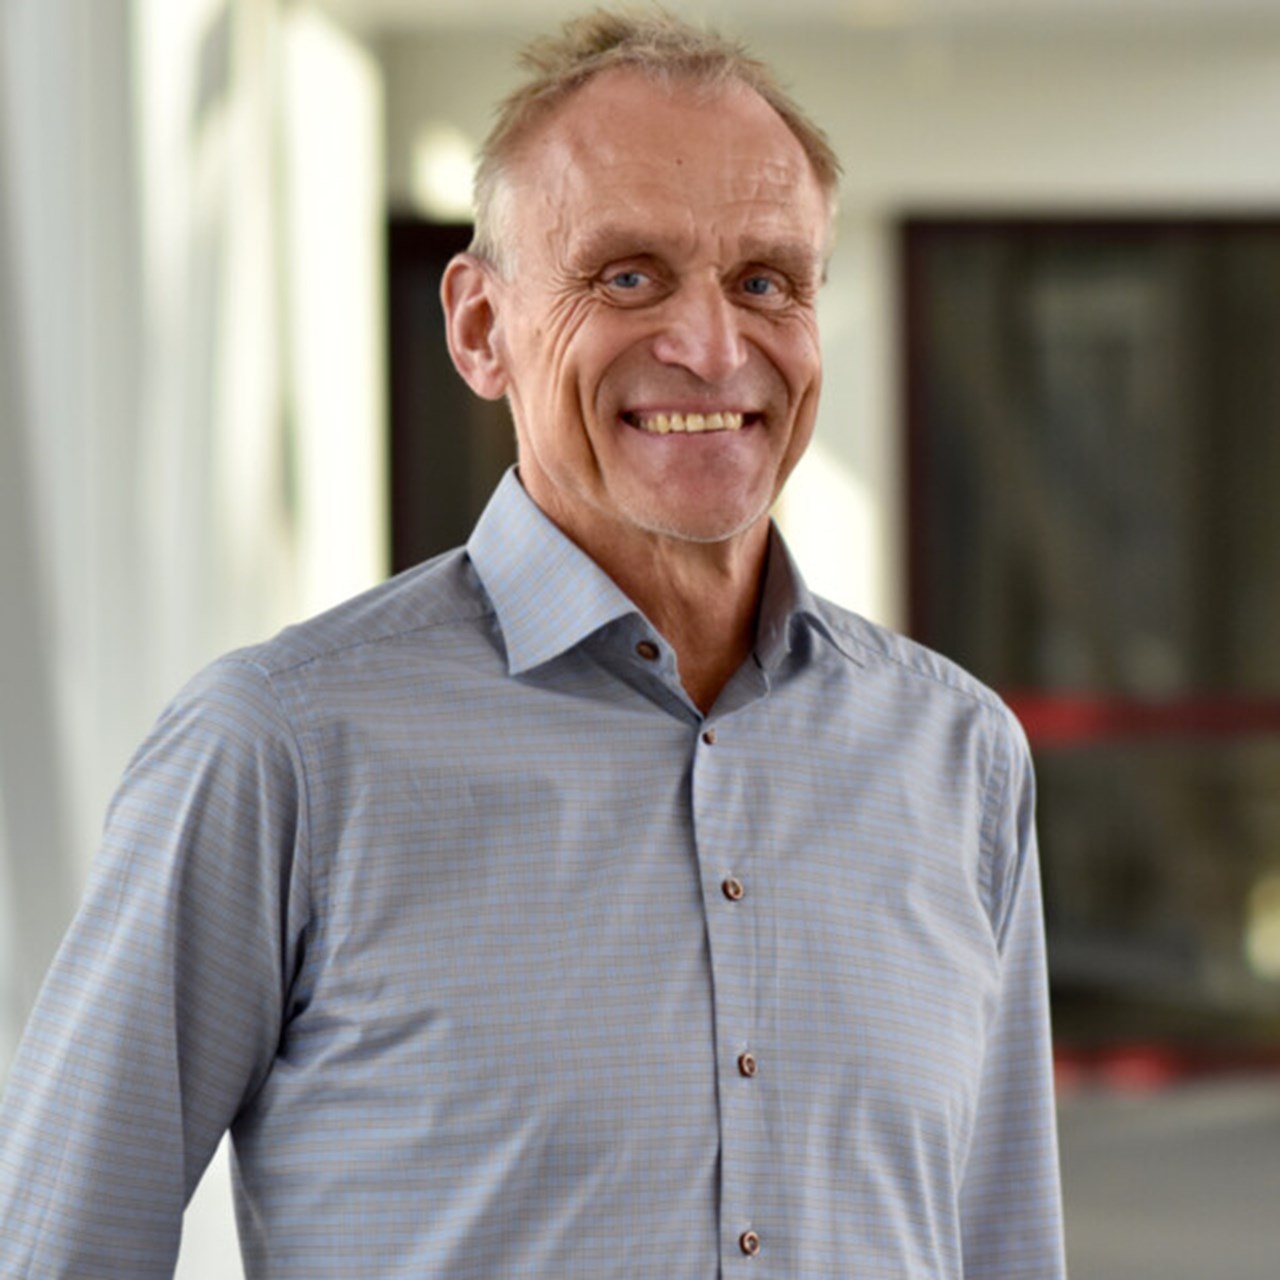 Porträtt på Martin Fahlström, professor i professionell utveckling vid institutionen för klinisk vetenskap på Umeå universitet.